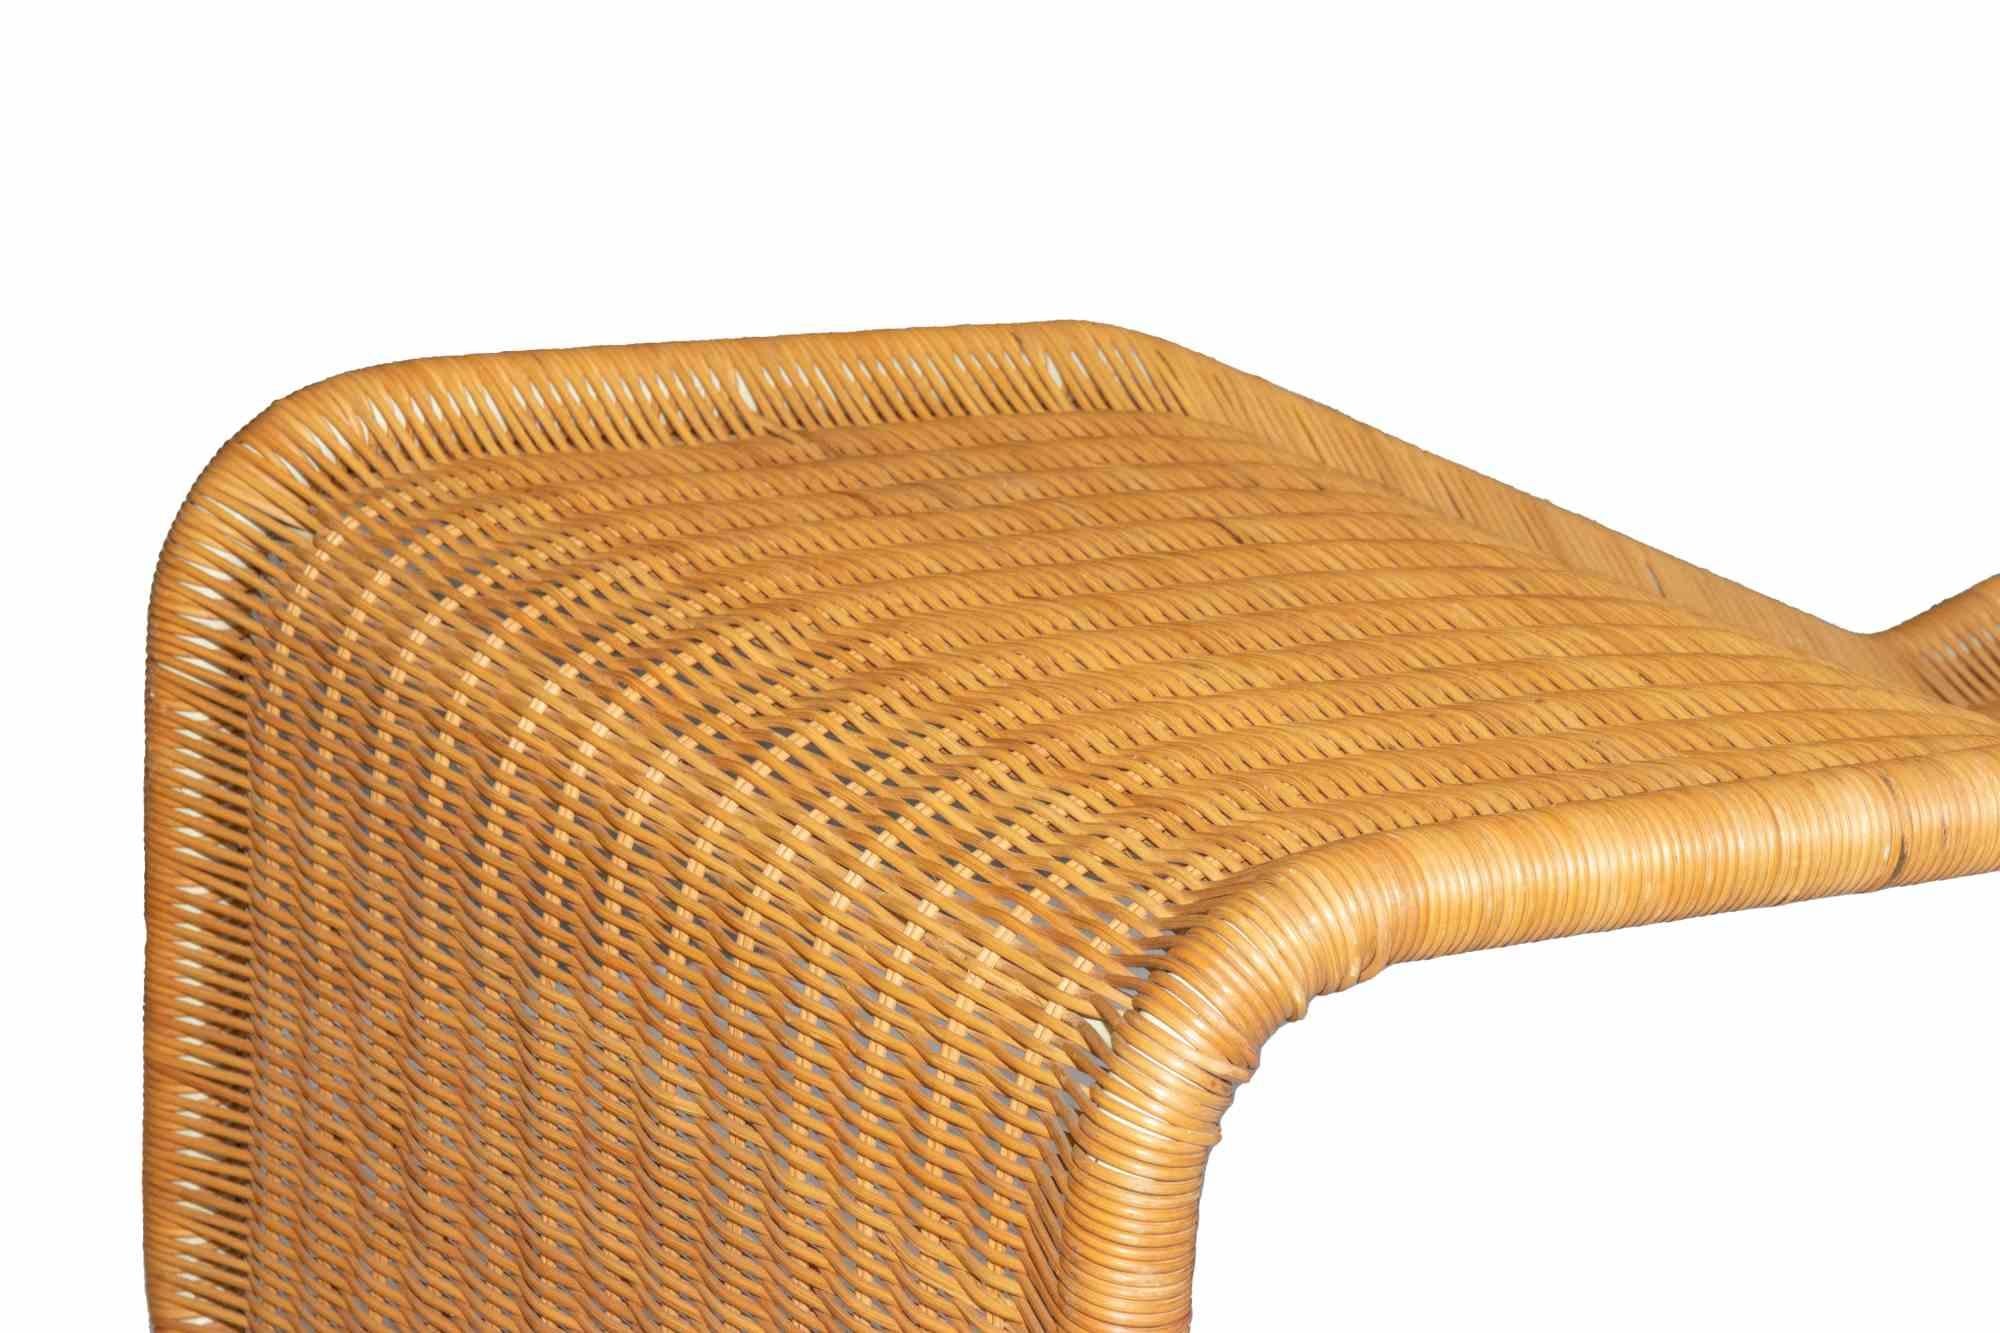 Die Chaise Longue ist ein originelles dekoratives Designermöbel von Tito Agnoli aus dem Jahr 1962.

Seltenes Exemplar einer P3S-Rattan-Chaiselongue, entworfen von Tito Agnoli für Bonacina in den 60er Jahren.

Die Metallstruktur ist vollständig aus